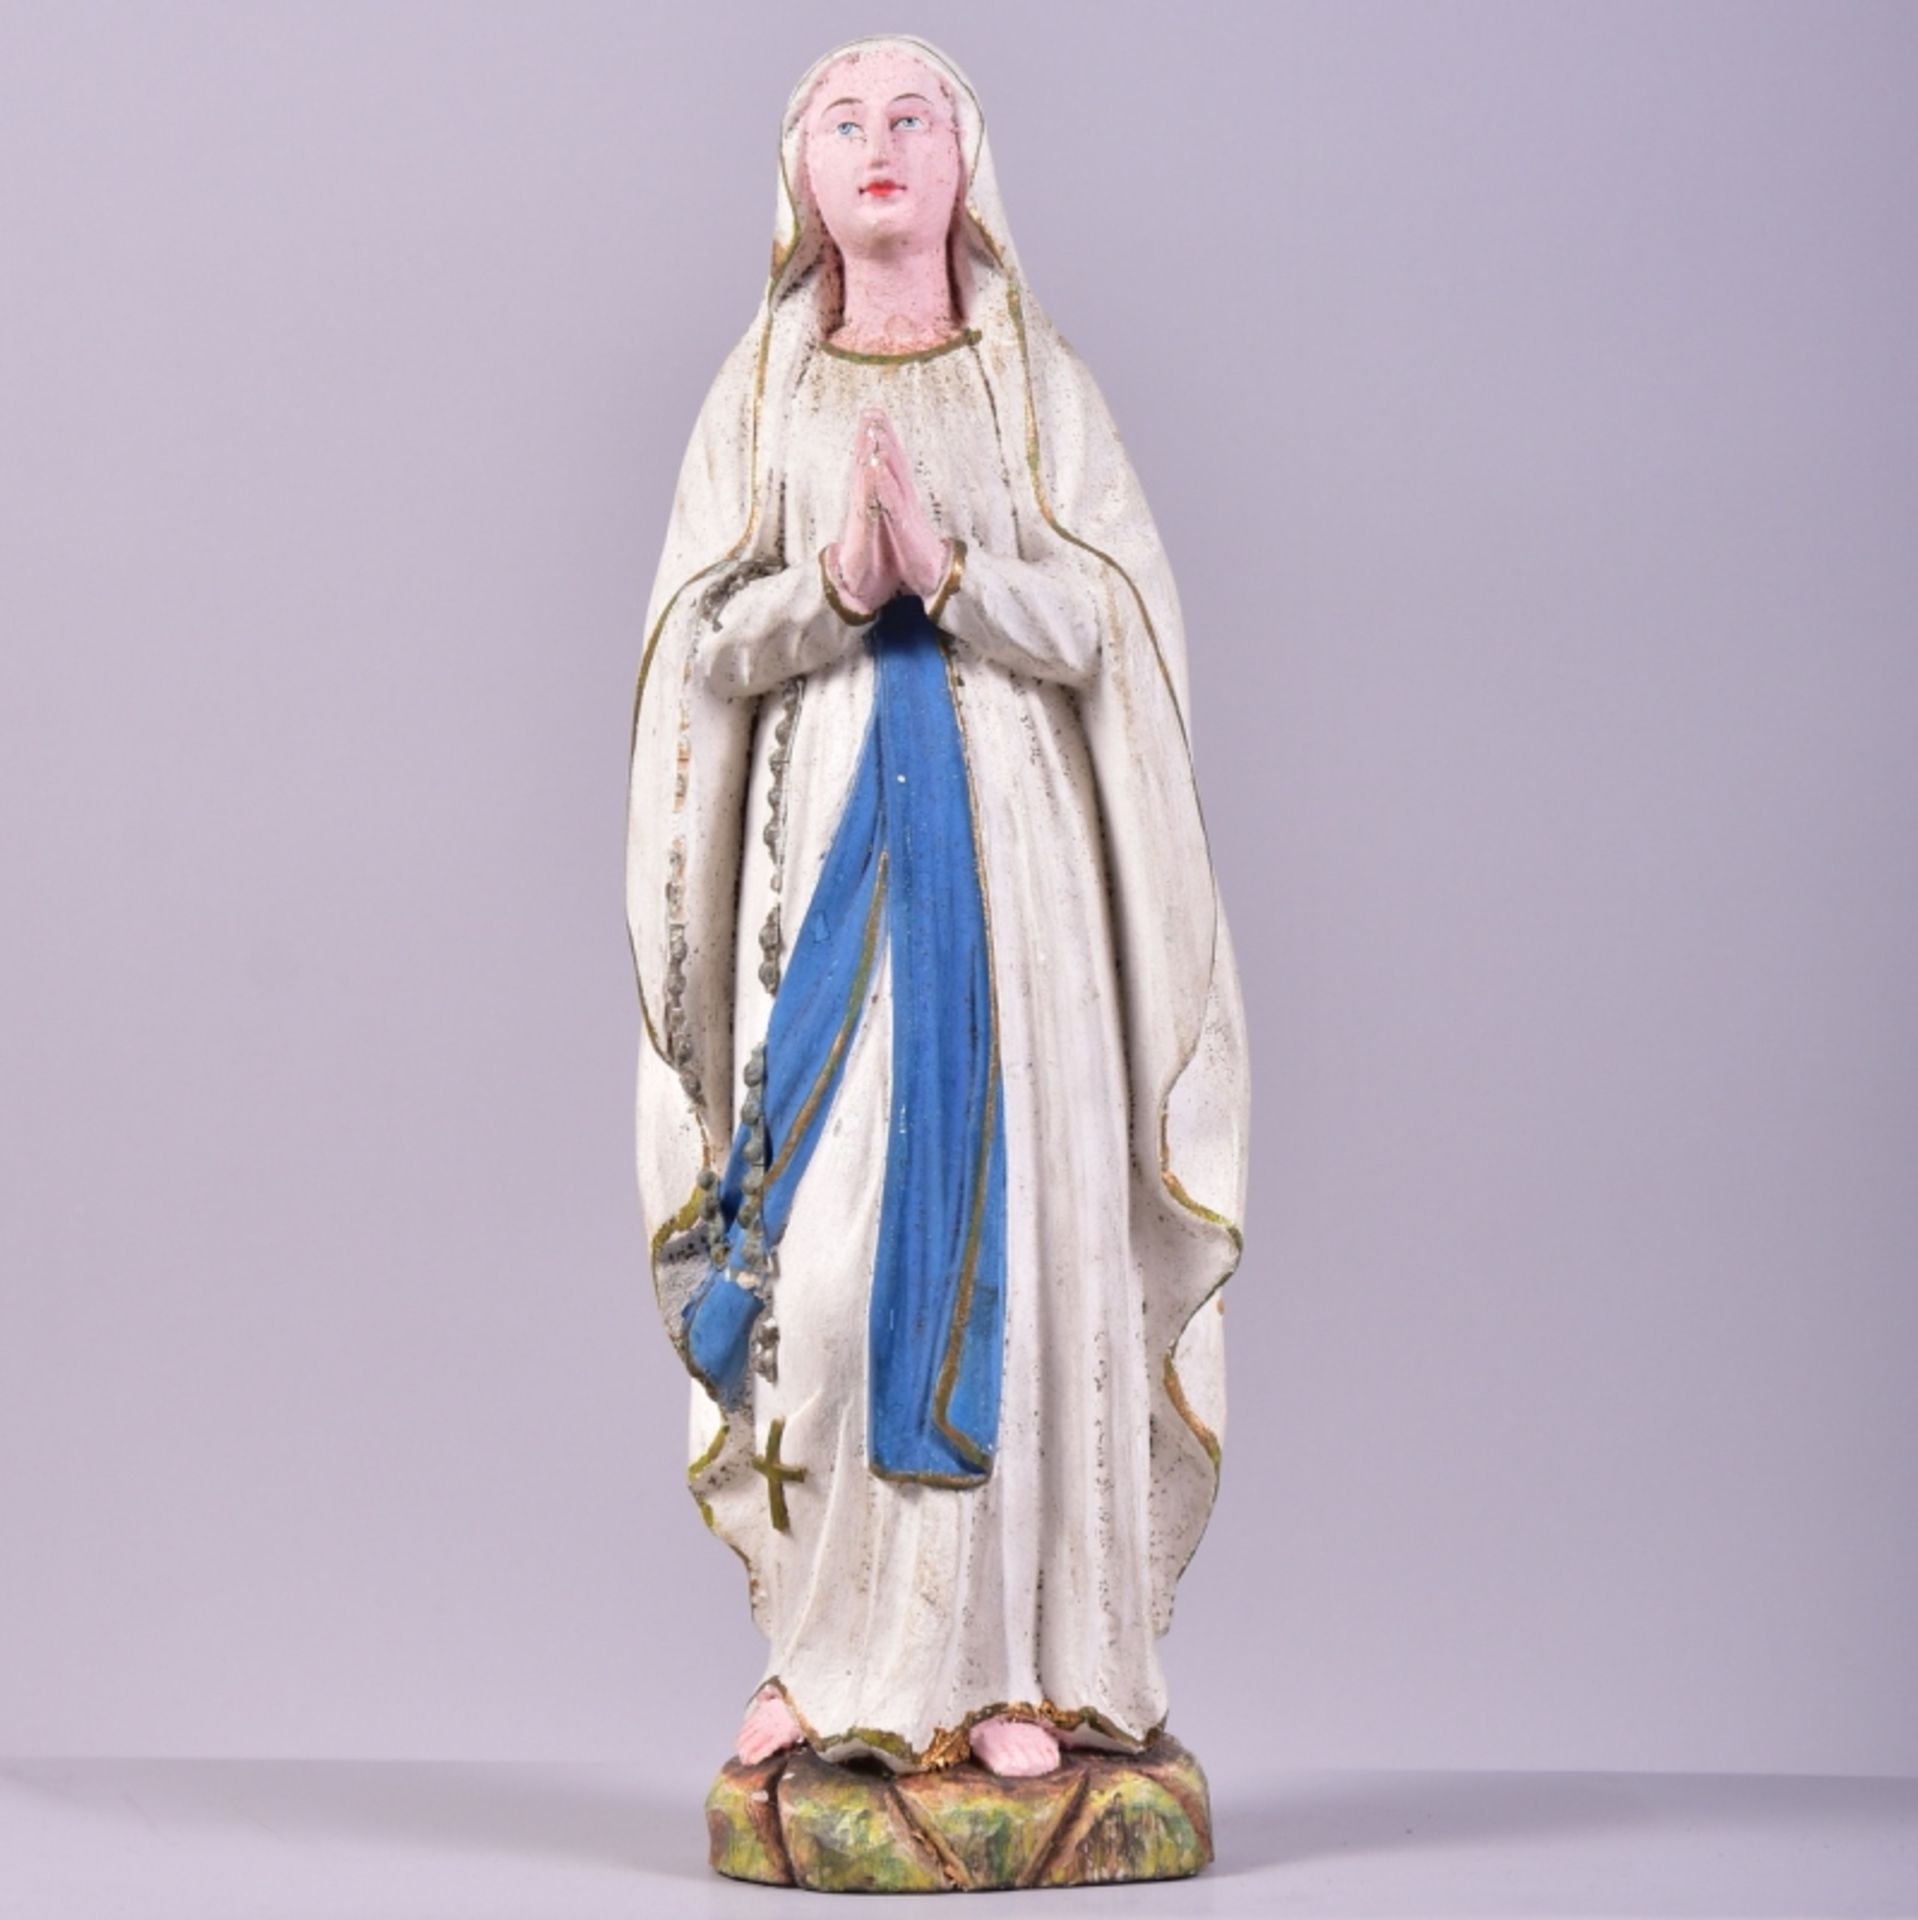 Heiligenfigur "Madonna von Lourdes" Figur "Mutter Gottes" Böhmen, um 1870, Holz geschnitzt,